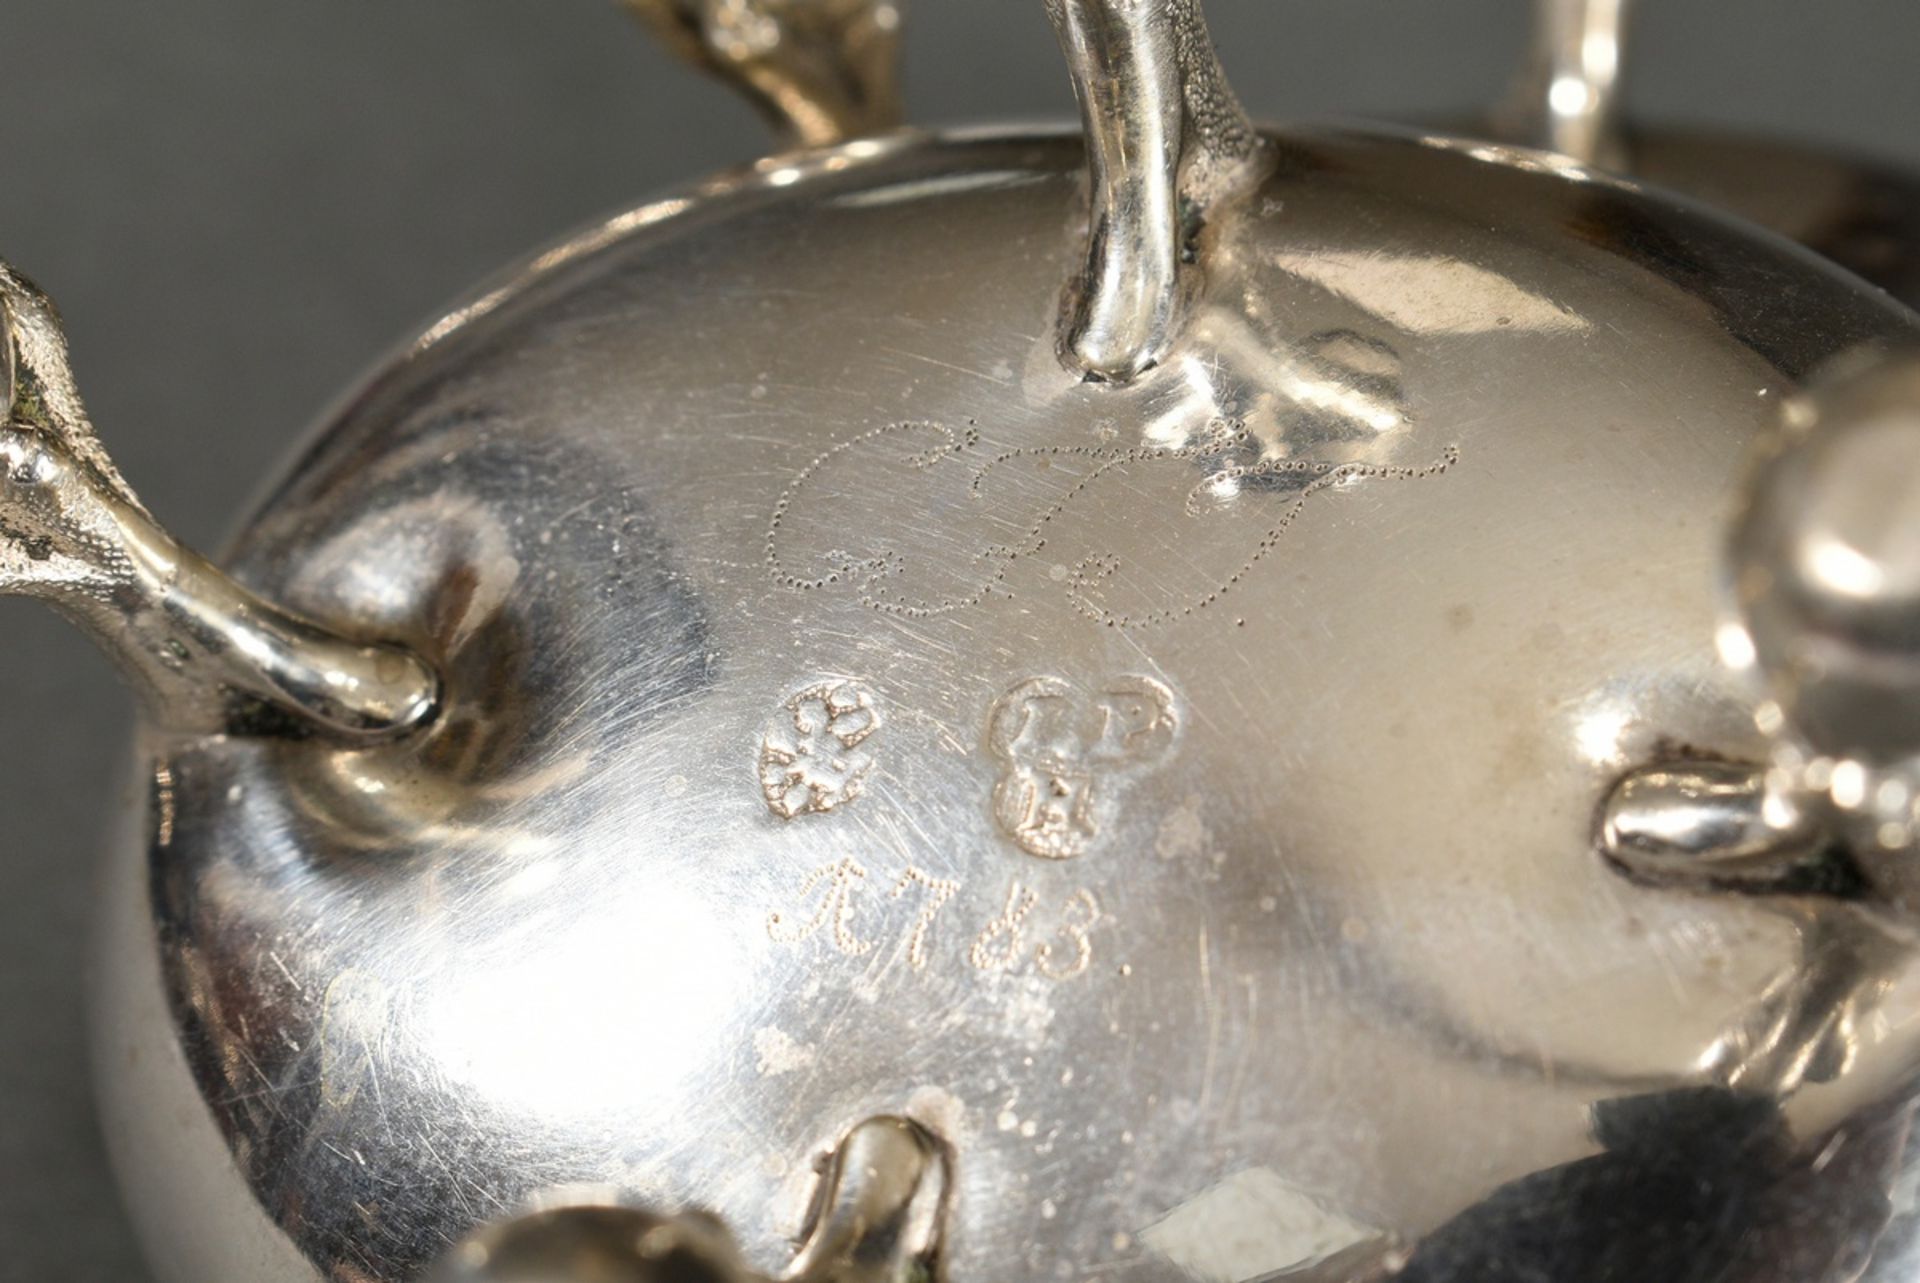 Paar ovale Salieren auf Claw-and-Ball Füßchen, Boden punktiert graviert „CFT 1783“, ungedeutetes MZ - Bild 6 aus 6